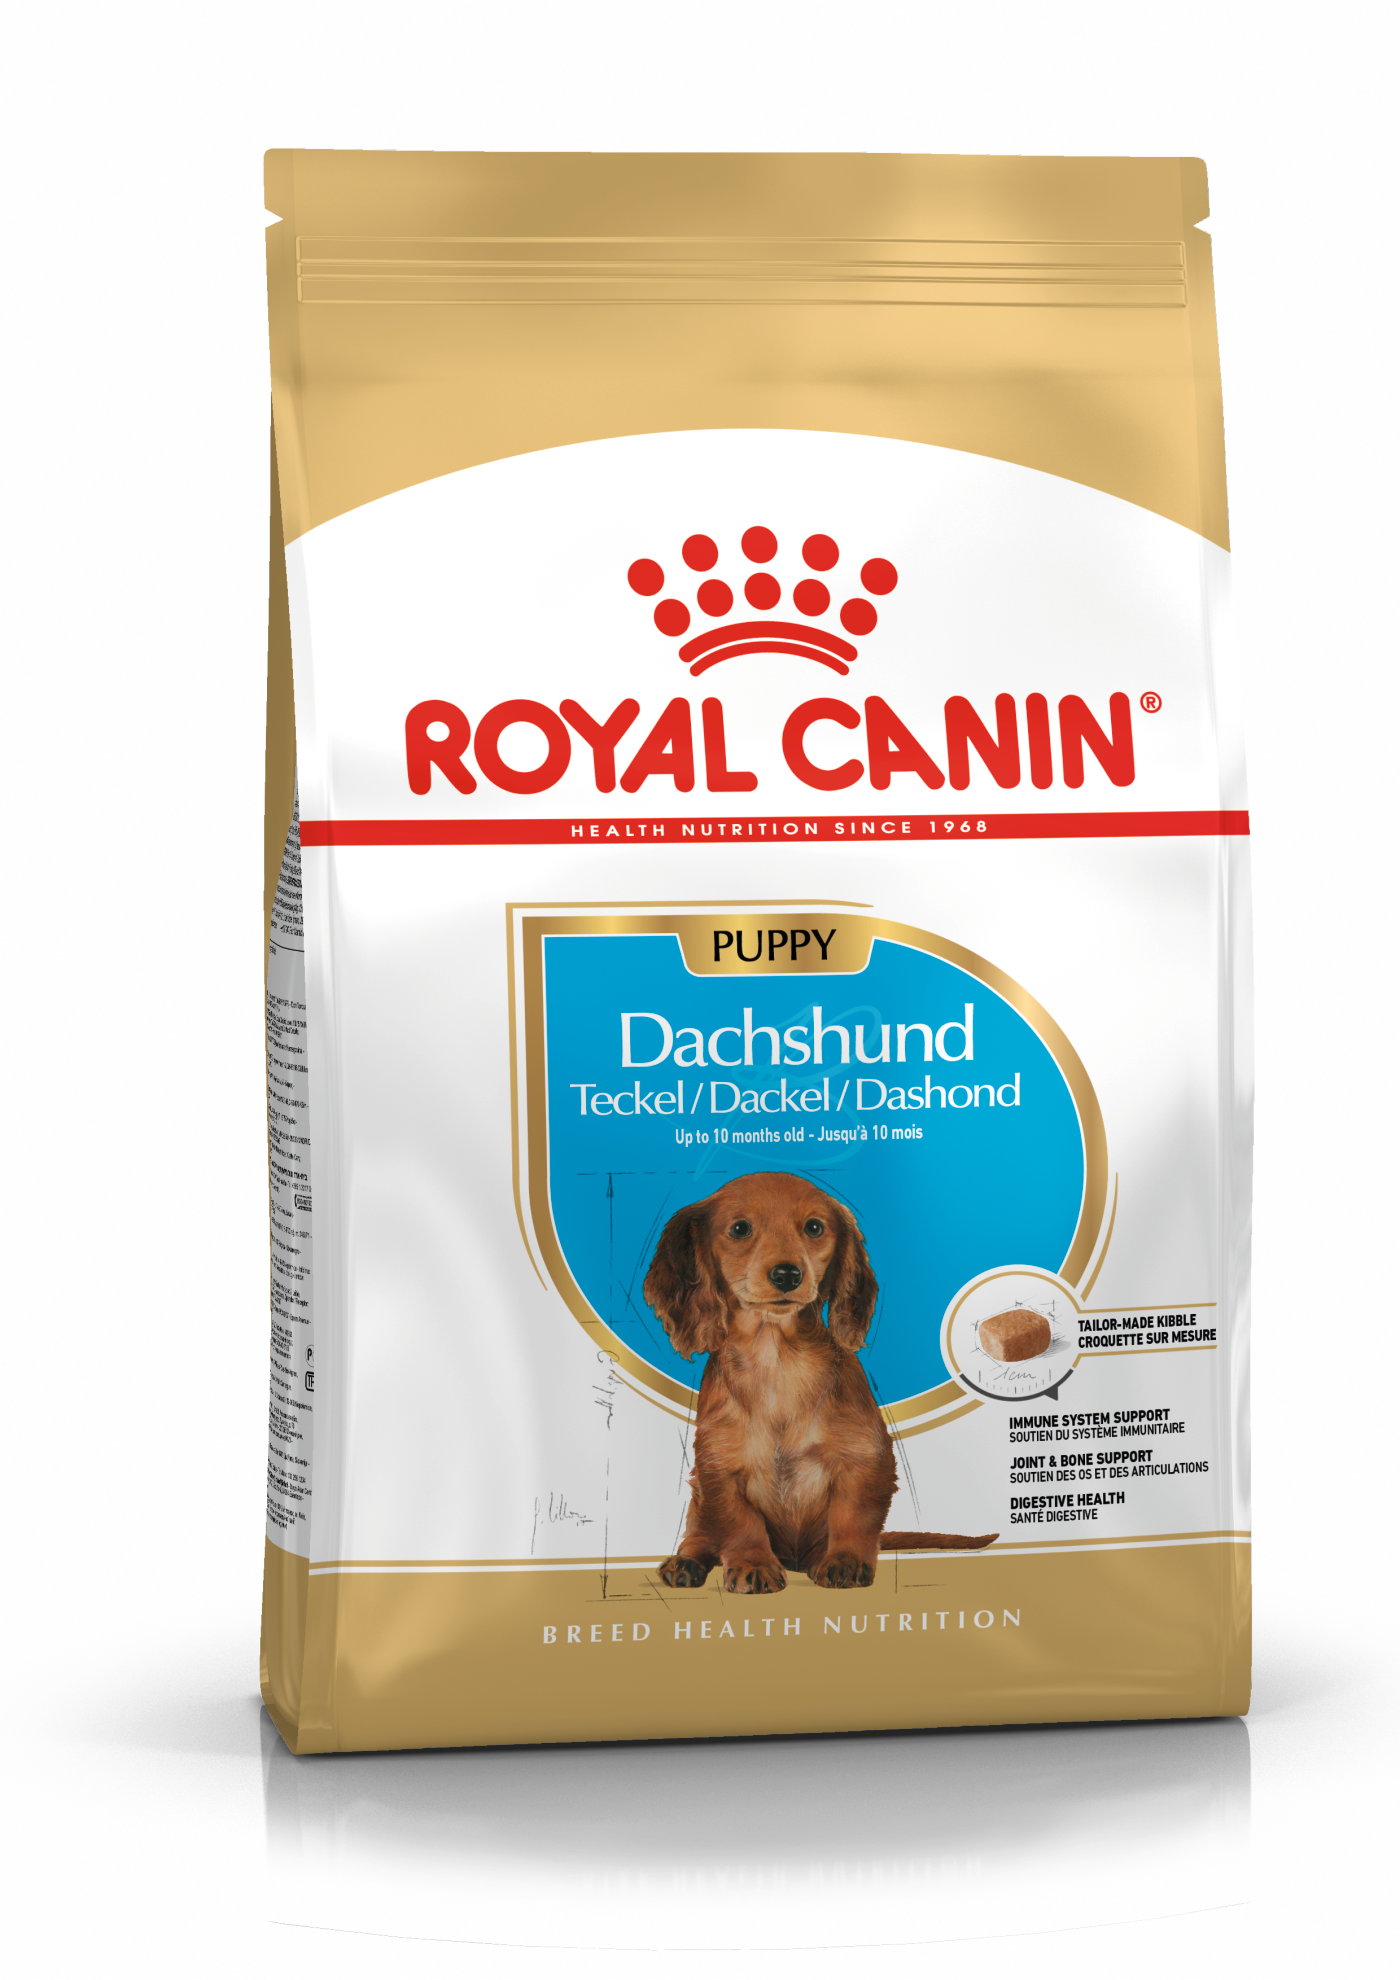 Royal Canin Dachshund Puppy - 1.5kg